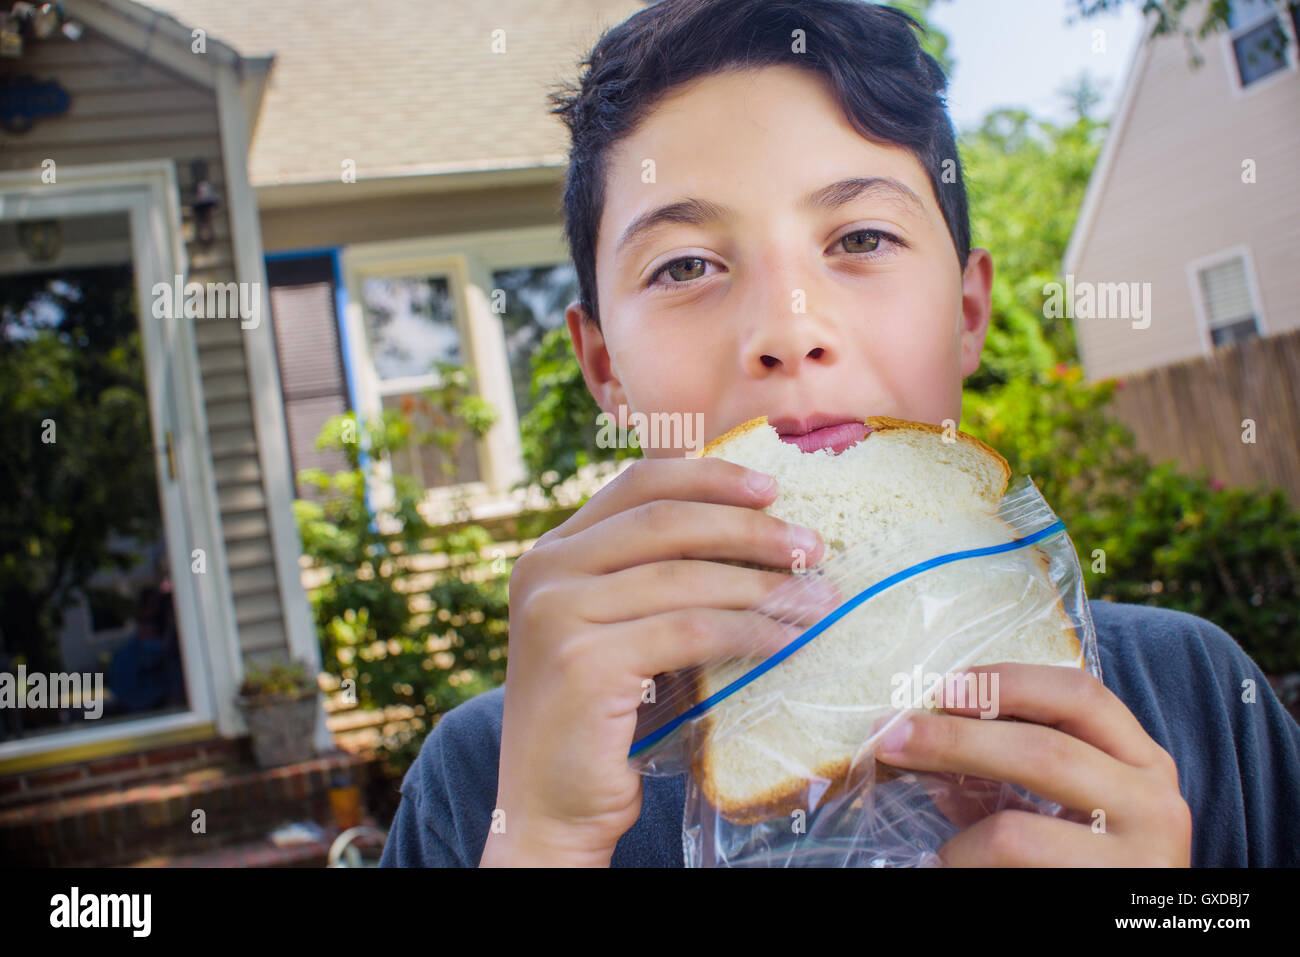 Portrait of cute boy eating sandwich in garden Stock Photo